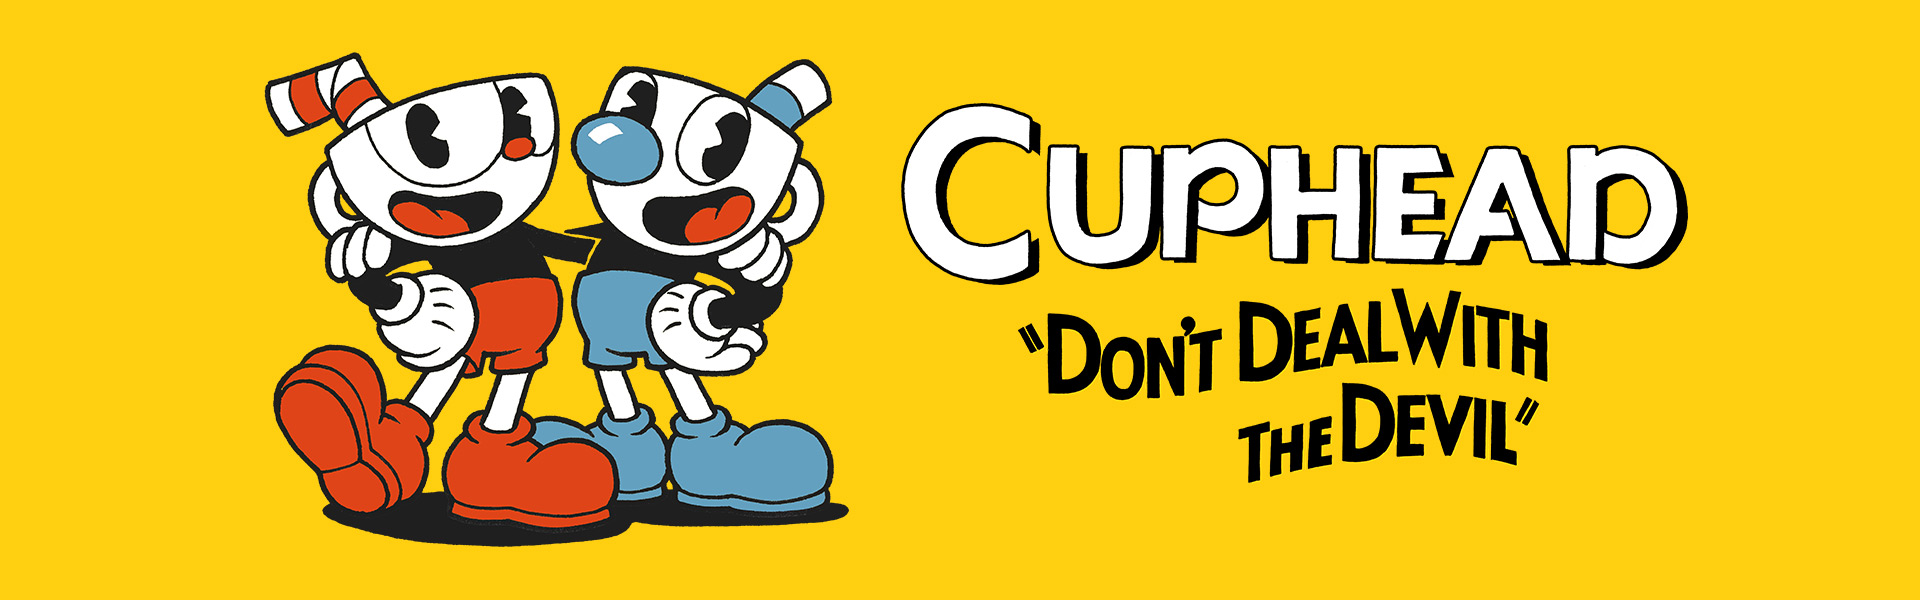 cuphead online co op